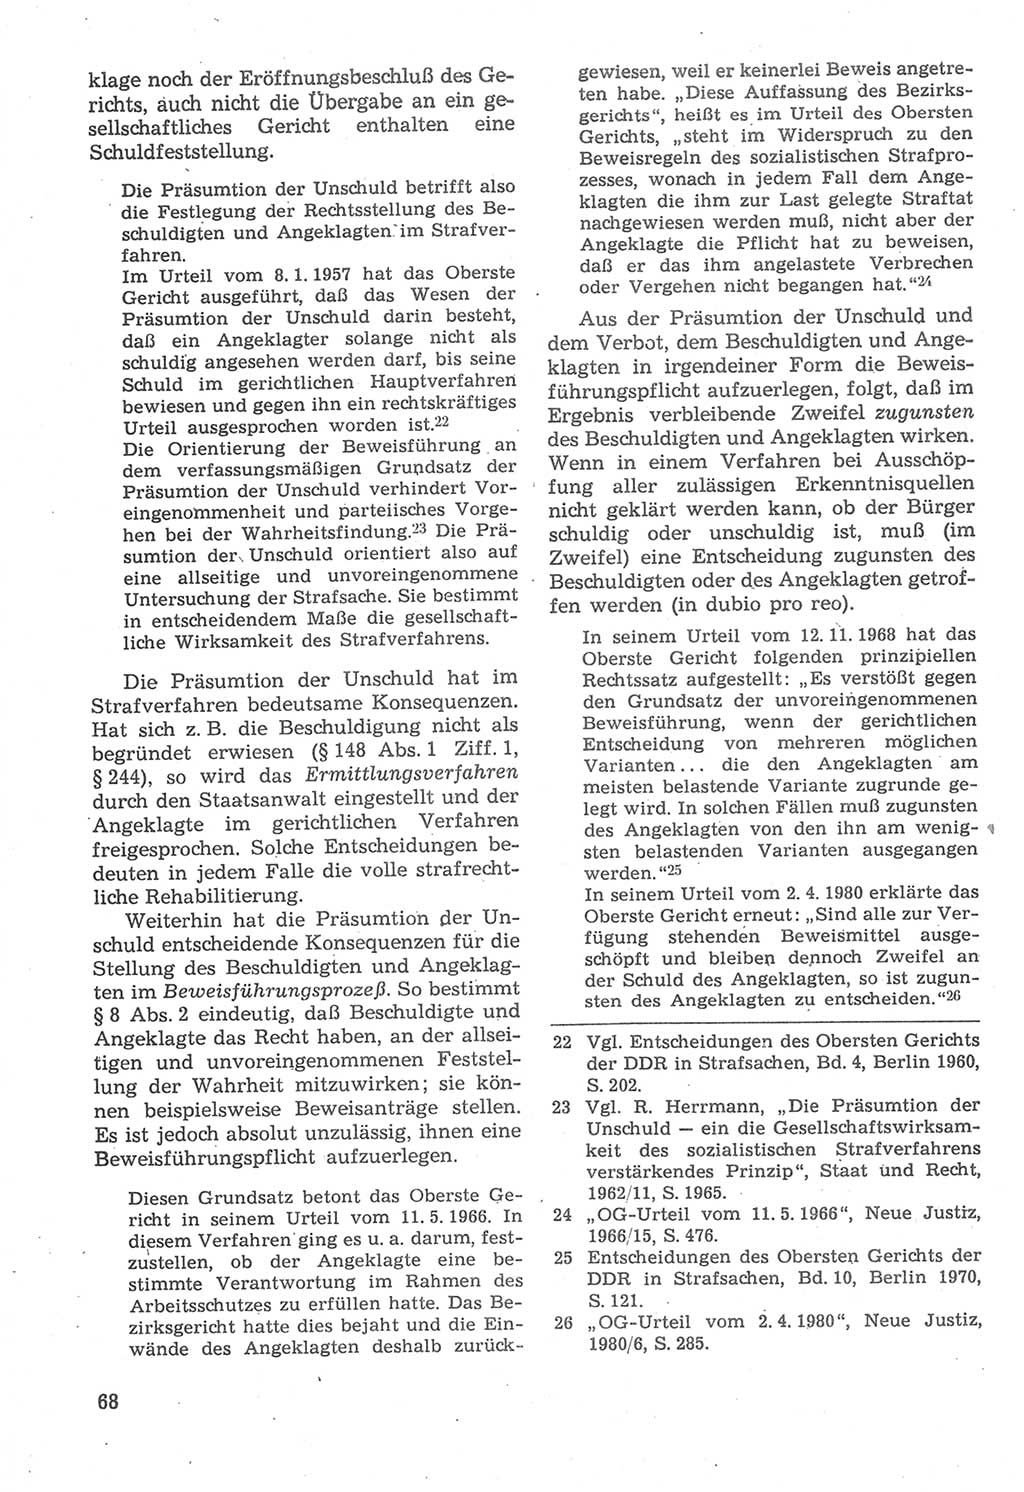 Strafverfahrensrecht [Deutsche Demokratische Republik (DDR)], Lehrbuch 1987, Seite 68 (Strafverf.-R. DDR Lb. 1987, S. 68)